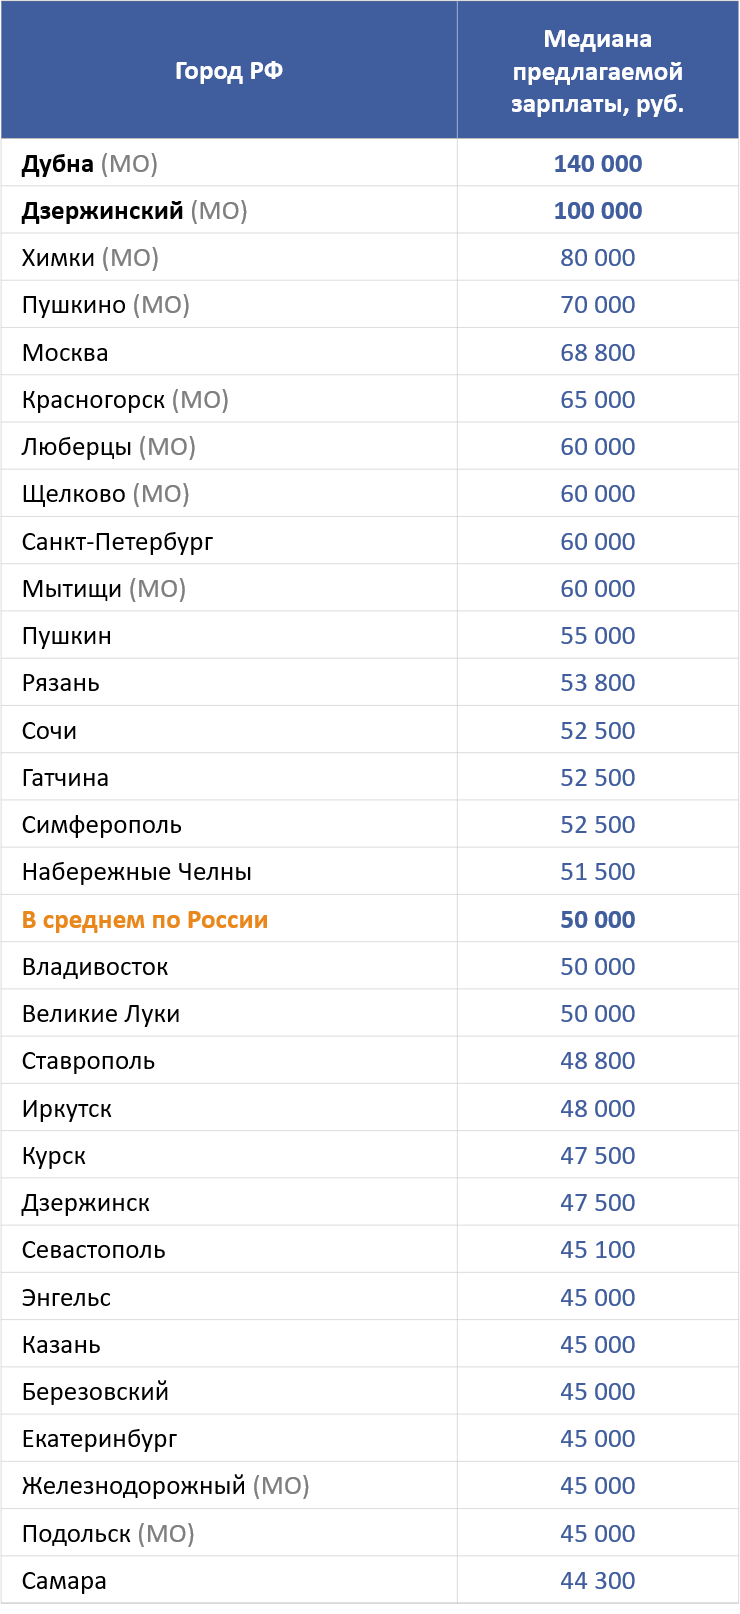 ТОП-30 городов со средними предлагаемыми зарплатами для SEO-специалиста